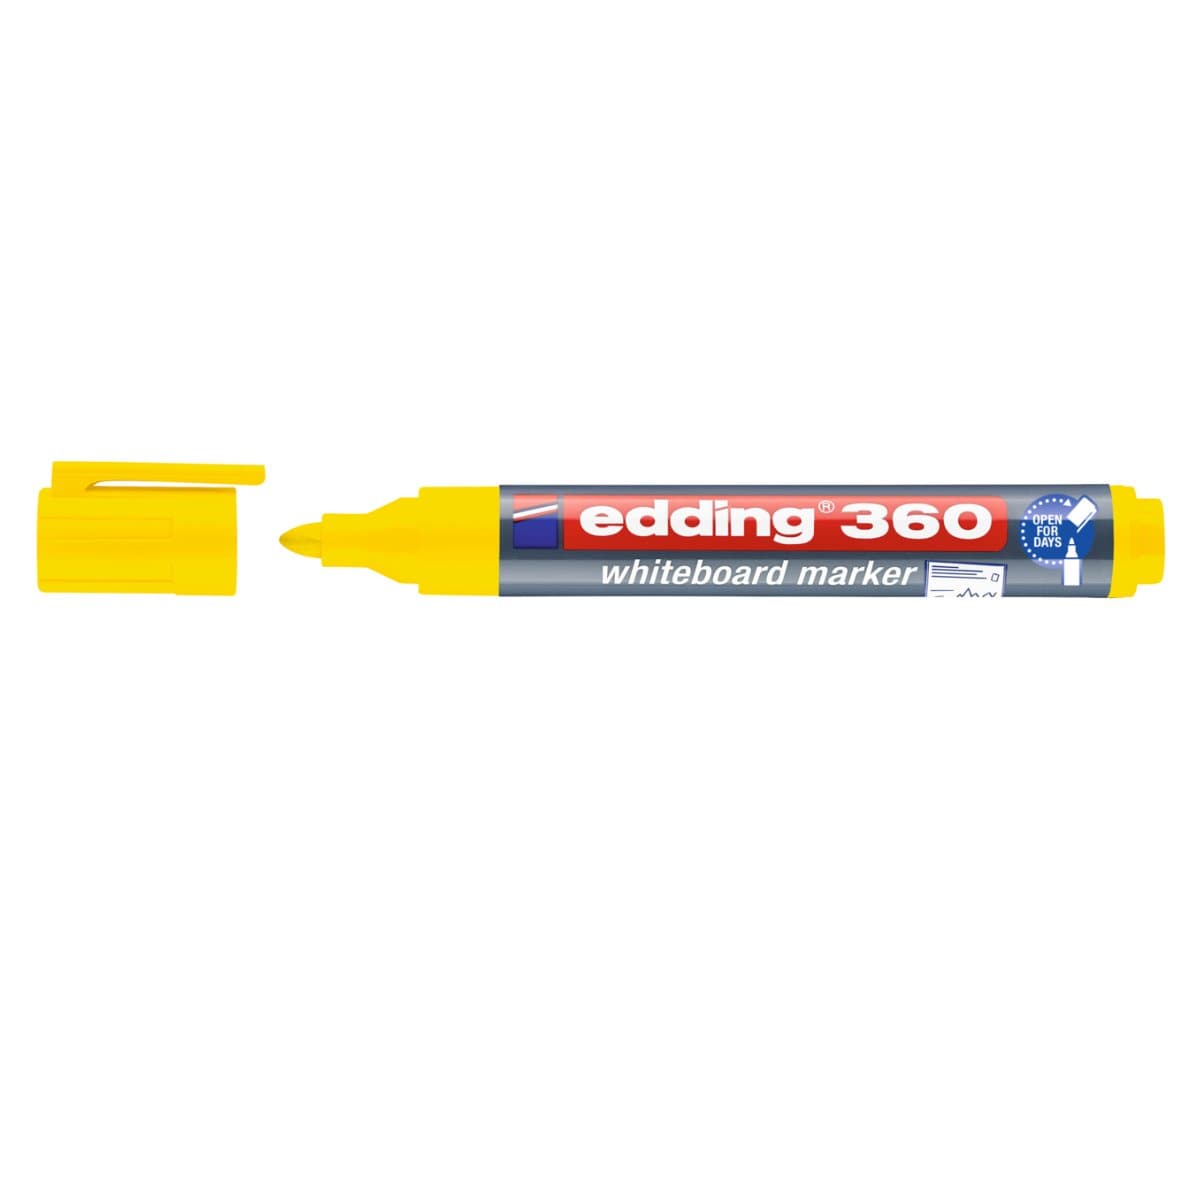 edding 360 Whiteboard Marker, 1.5-3mm Bullet Tip, Yellow